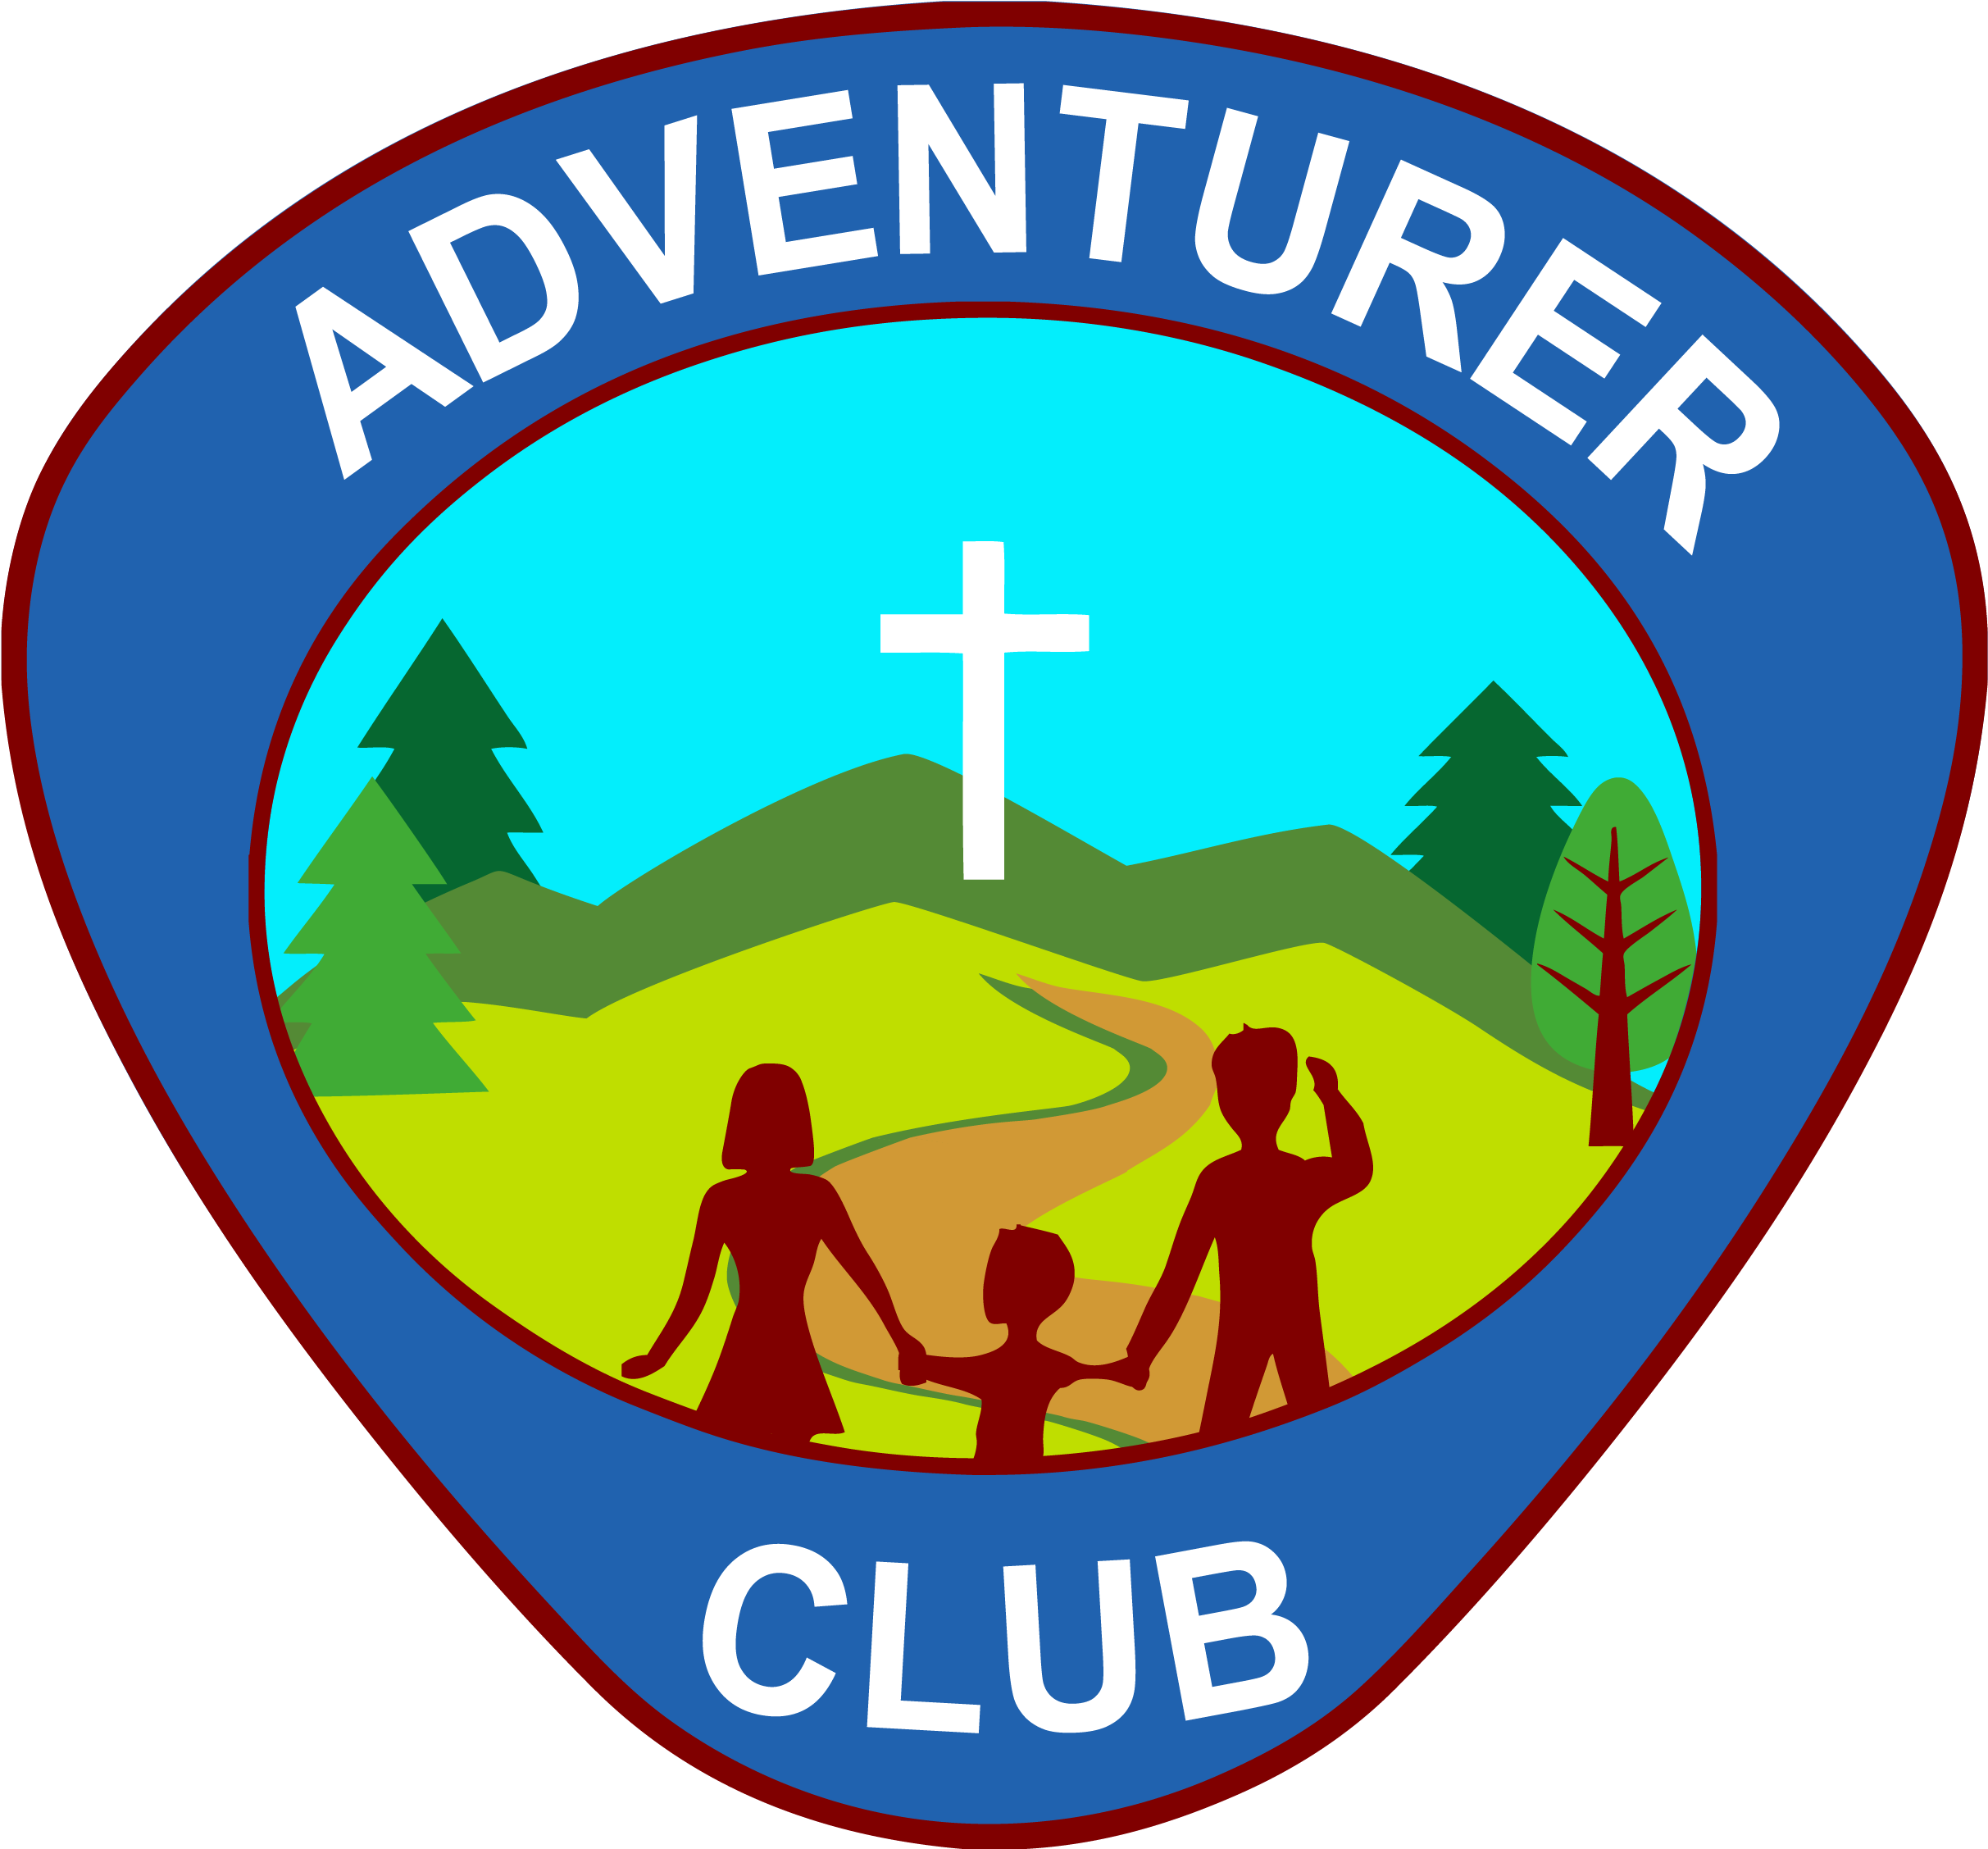 Sda Adventurer Logo Adventurers - Logo Club De Aventureros (2665x2376)